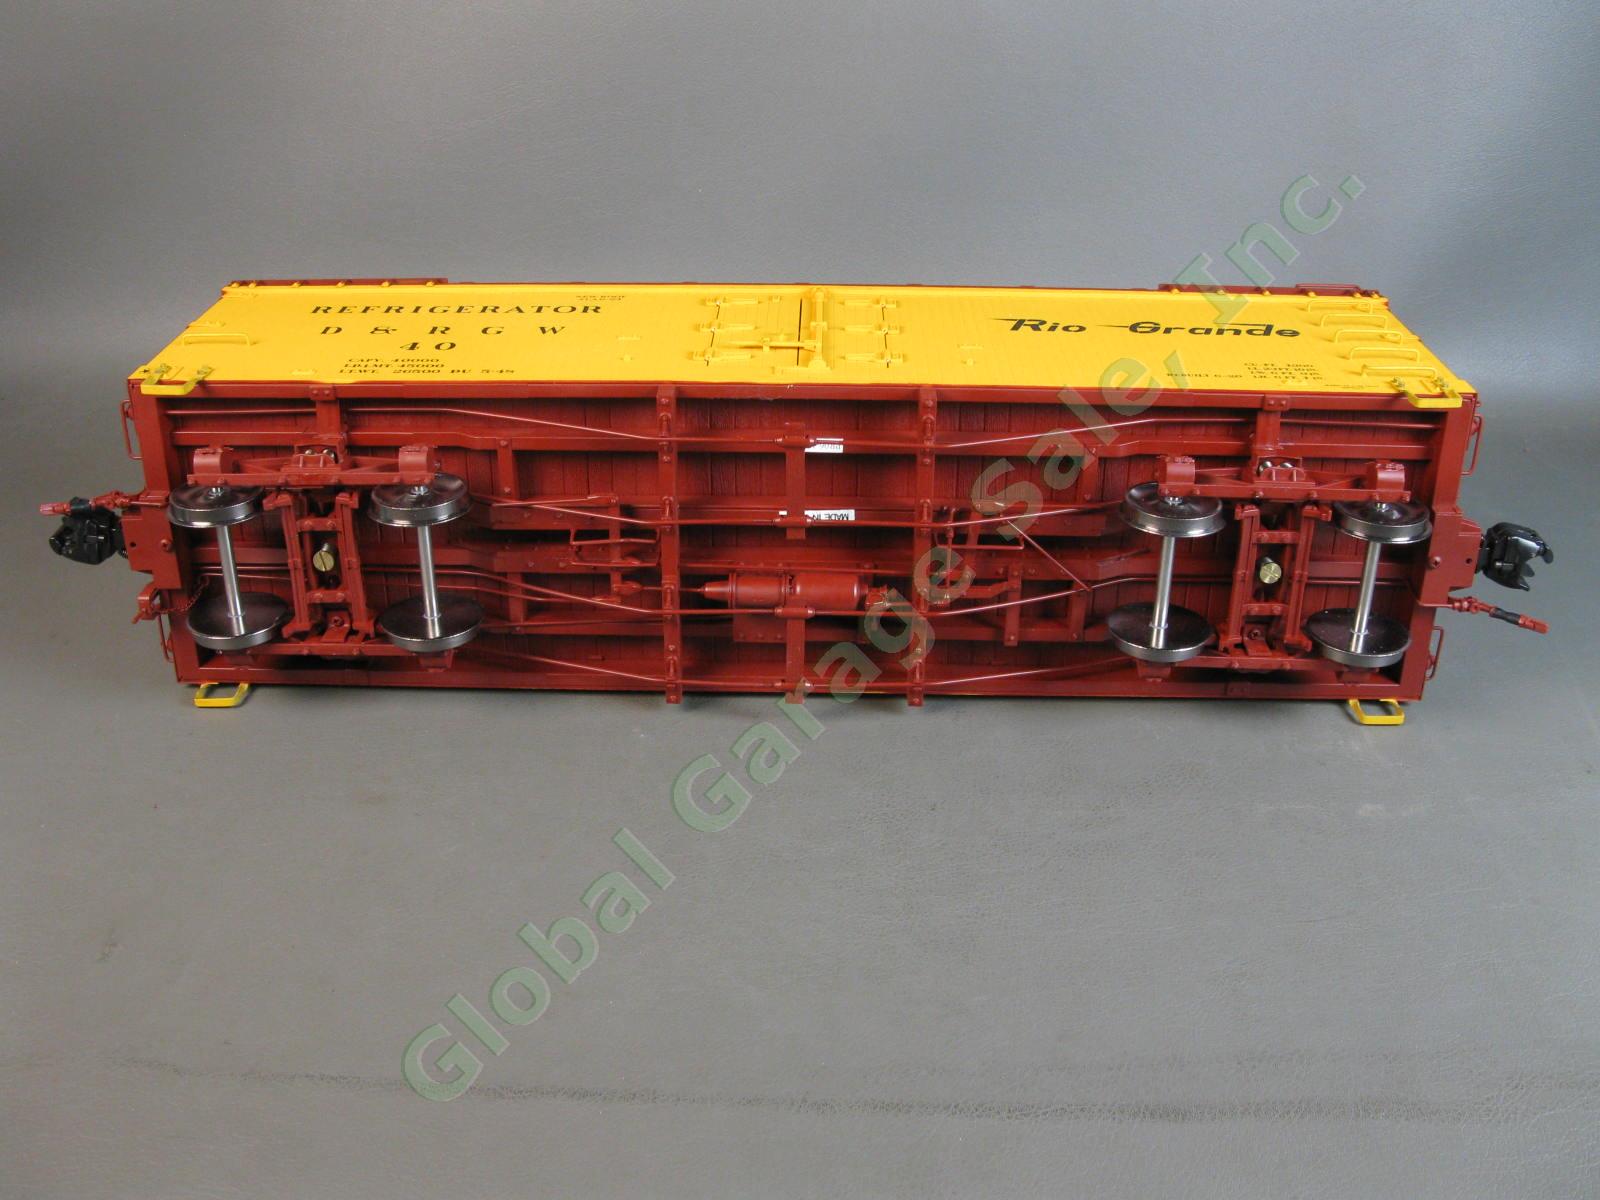 Accucraft AMS AM31-510 D&RGW #40 Flying Rio Grande Reefer Refrigerator Train Car 8